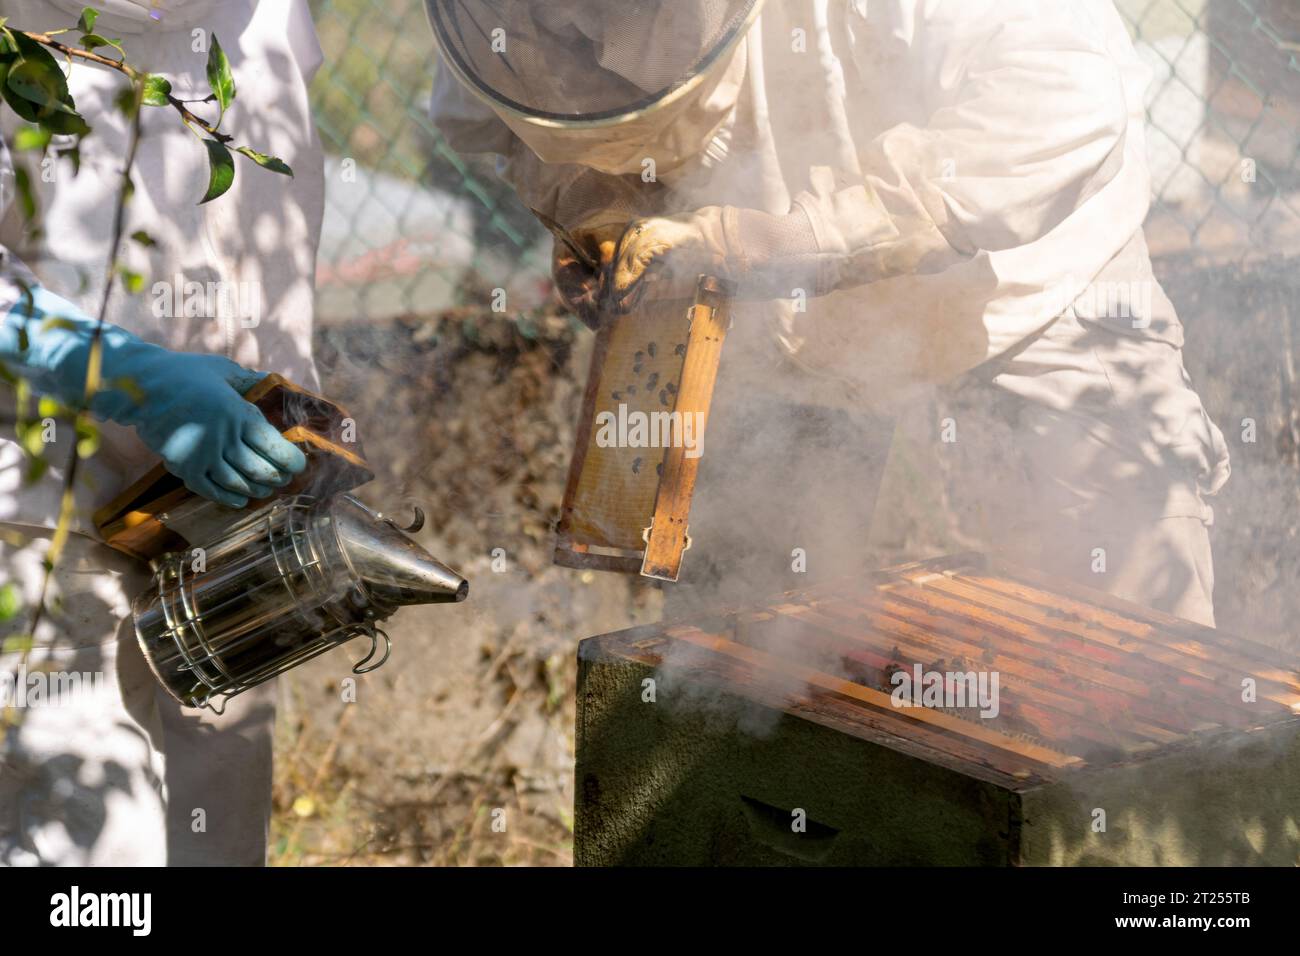 Un apiculteur fume dans une ruche tandis qu'un autre apiculteur extrait des nids d'abeilles Banque D'Images